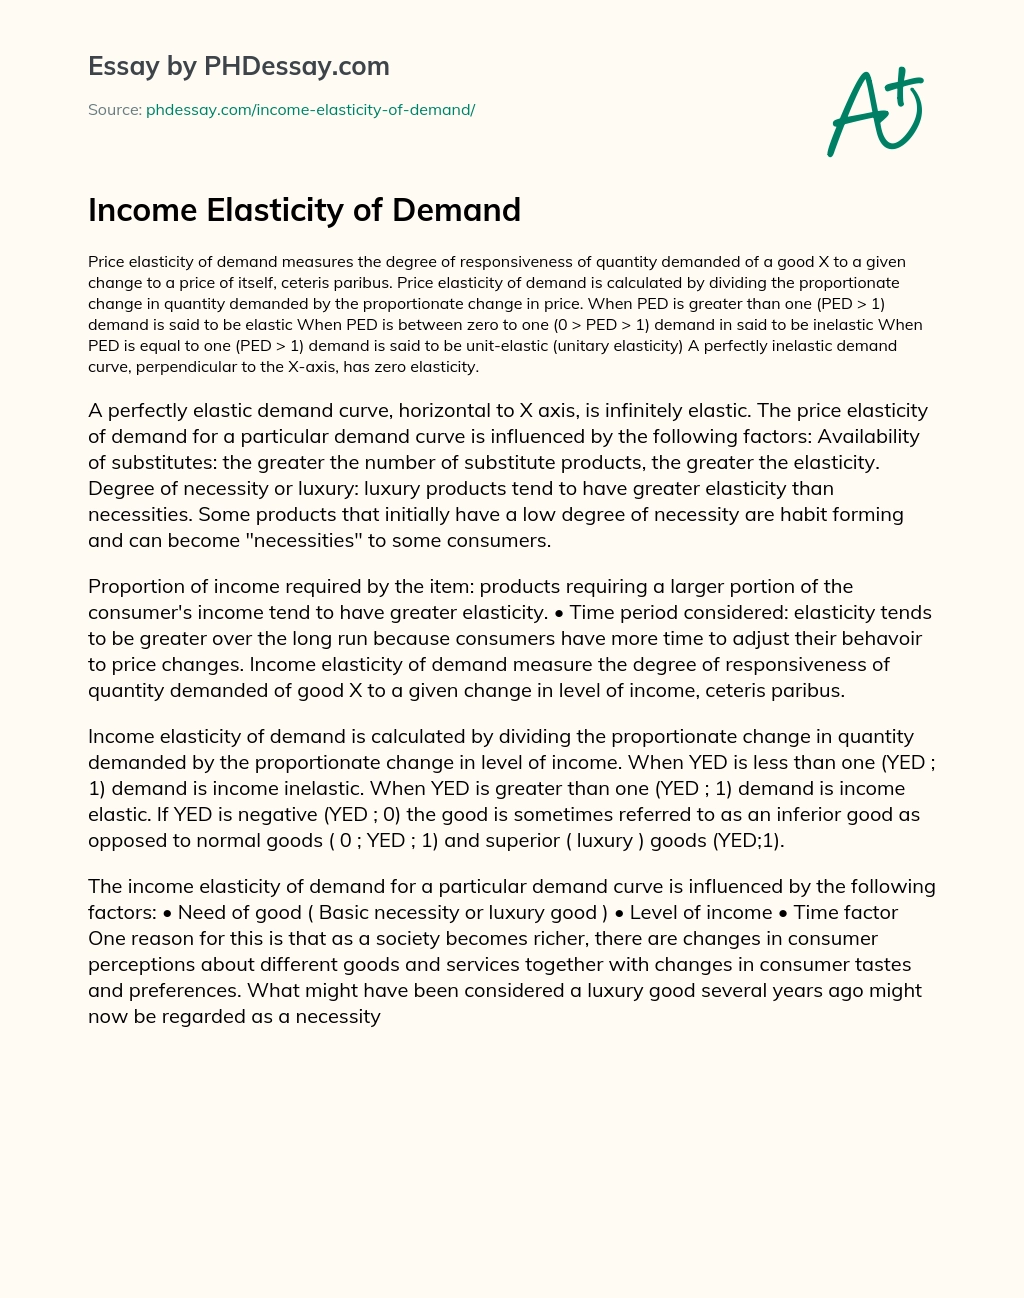 Income Elasticity of Demand essay